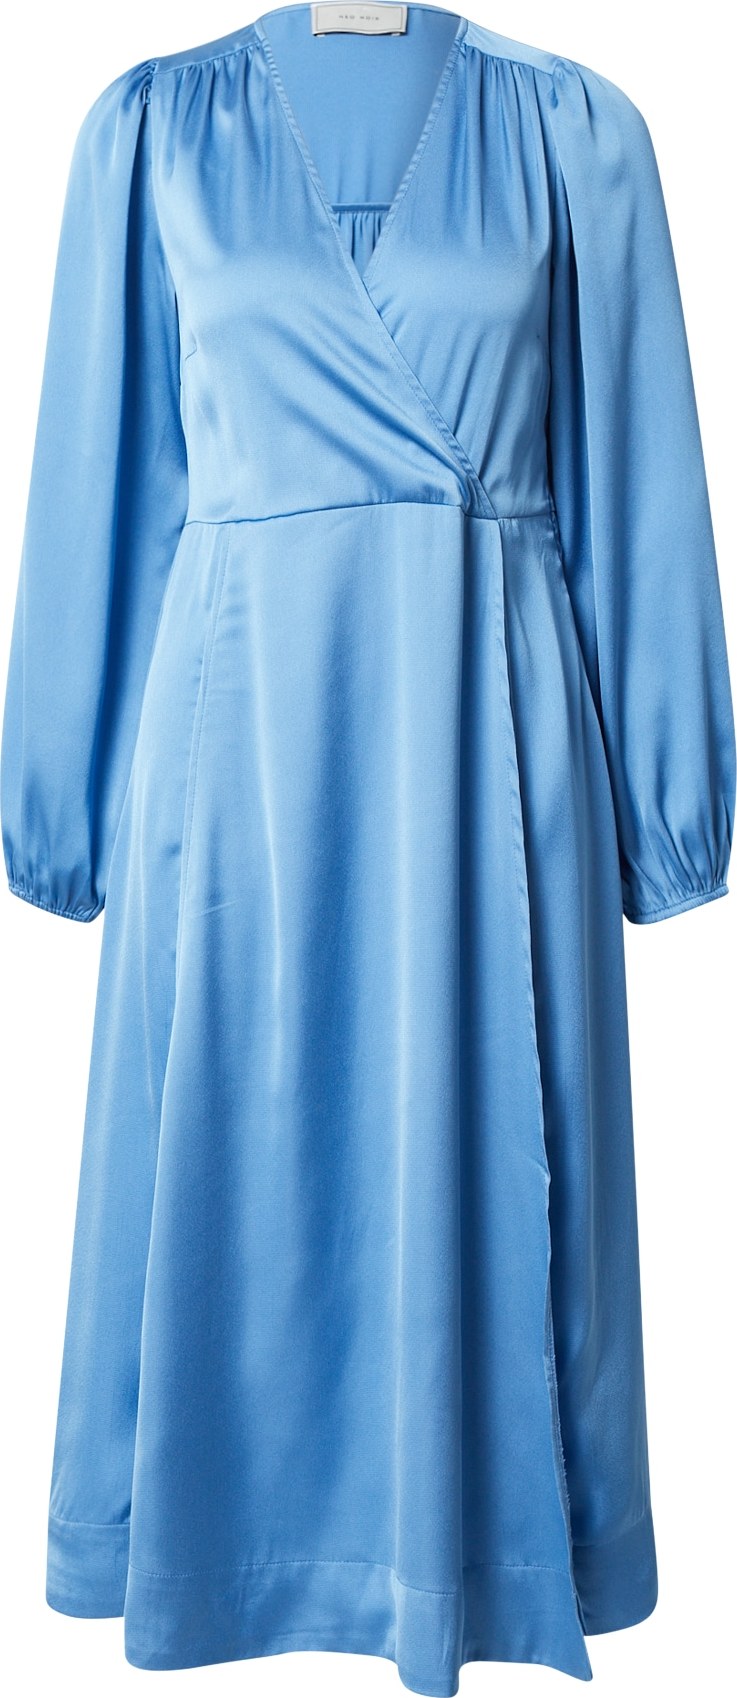 Neo Noir Koktejlové šaty 'Hannah' nebeská modř